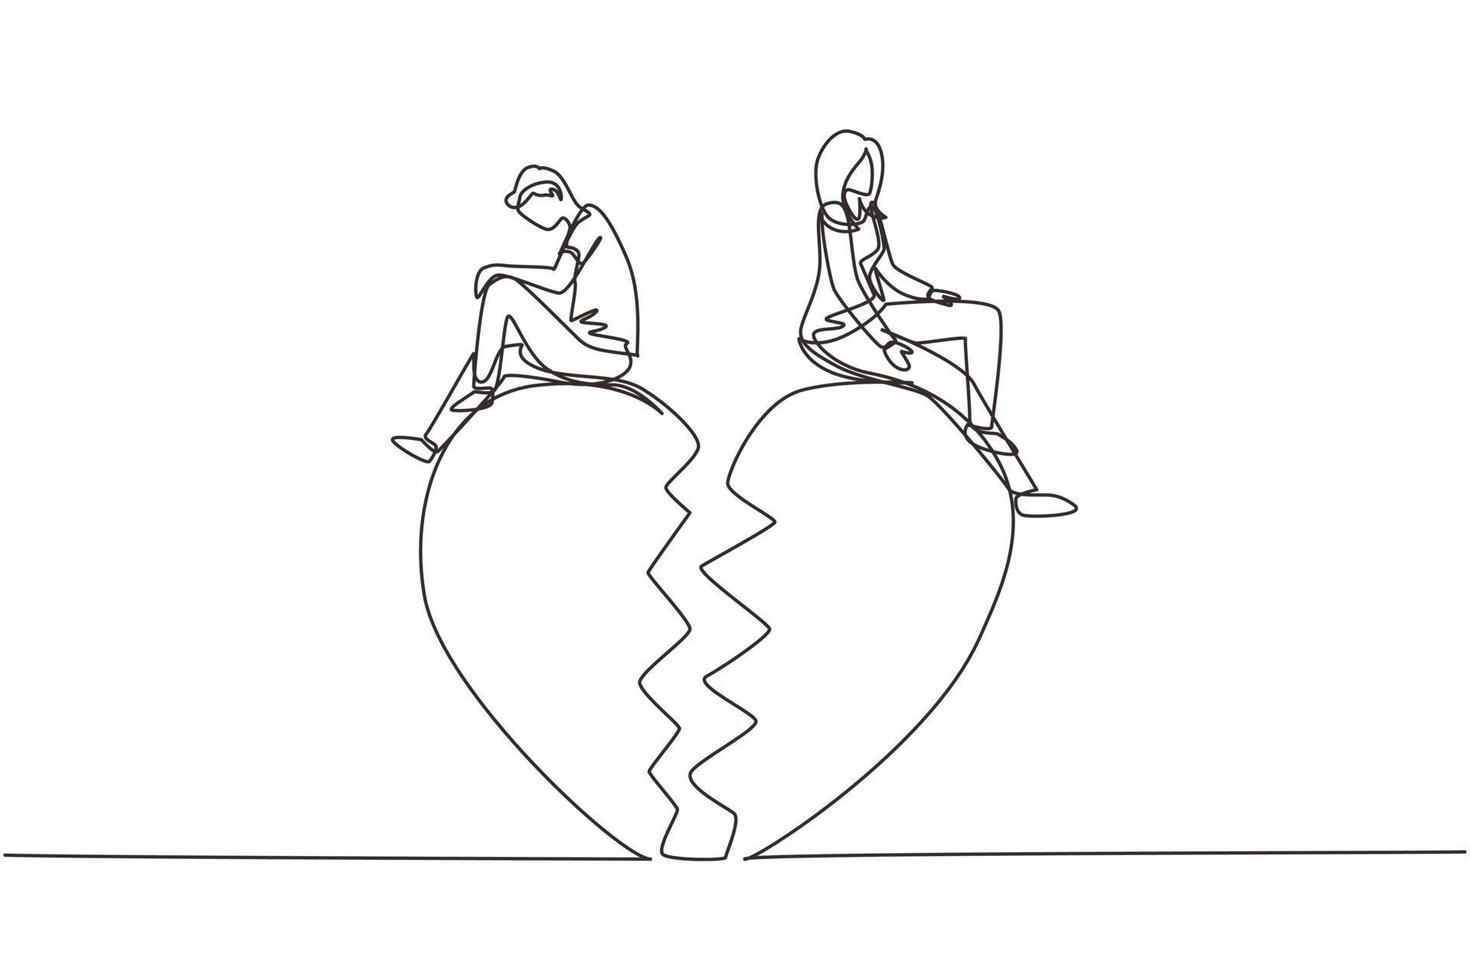 rottura del rapporto di disegno a linea continua singola, cuore spezzato, coppia rivolta in direzione opposta. coppia seduta su un grande cuore spezzato a forma di. illustrazione vettoriale di disegno grafico dinamico di una linea